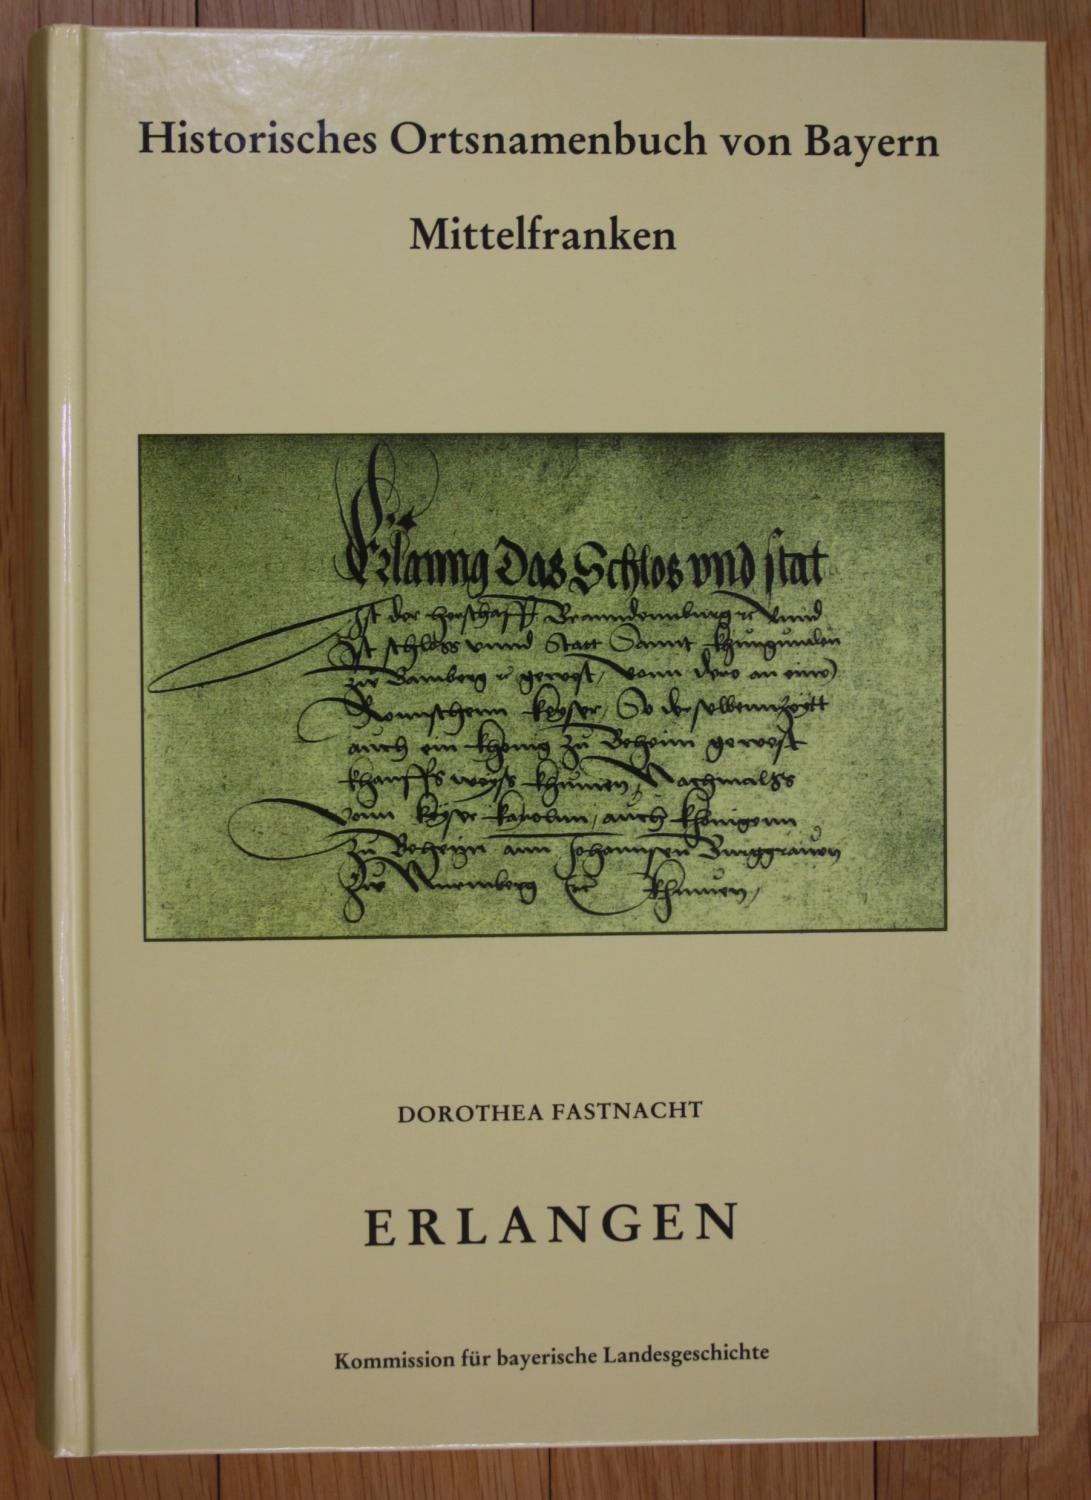 Historisches Ortsnamenbuch von Bayern / Regierungsbezirk Mittelfranken / Erlangen: Ehemaliger Stadt- und Landkreis